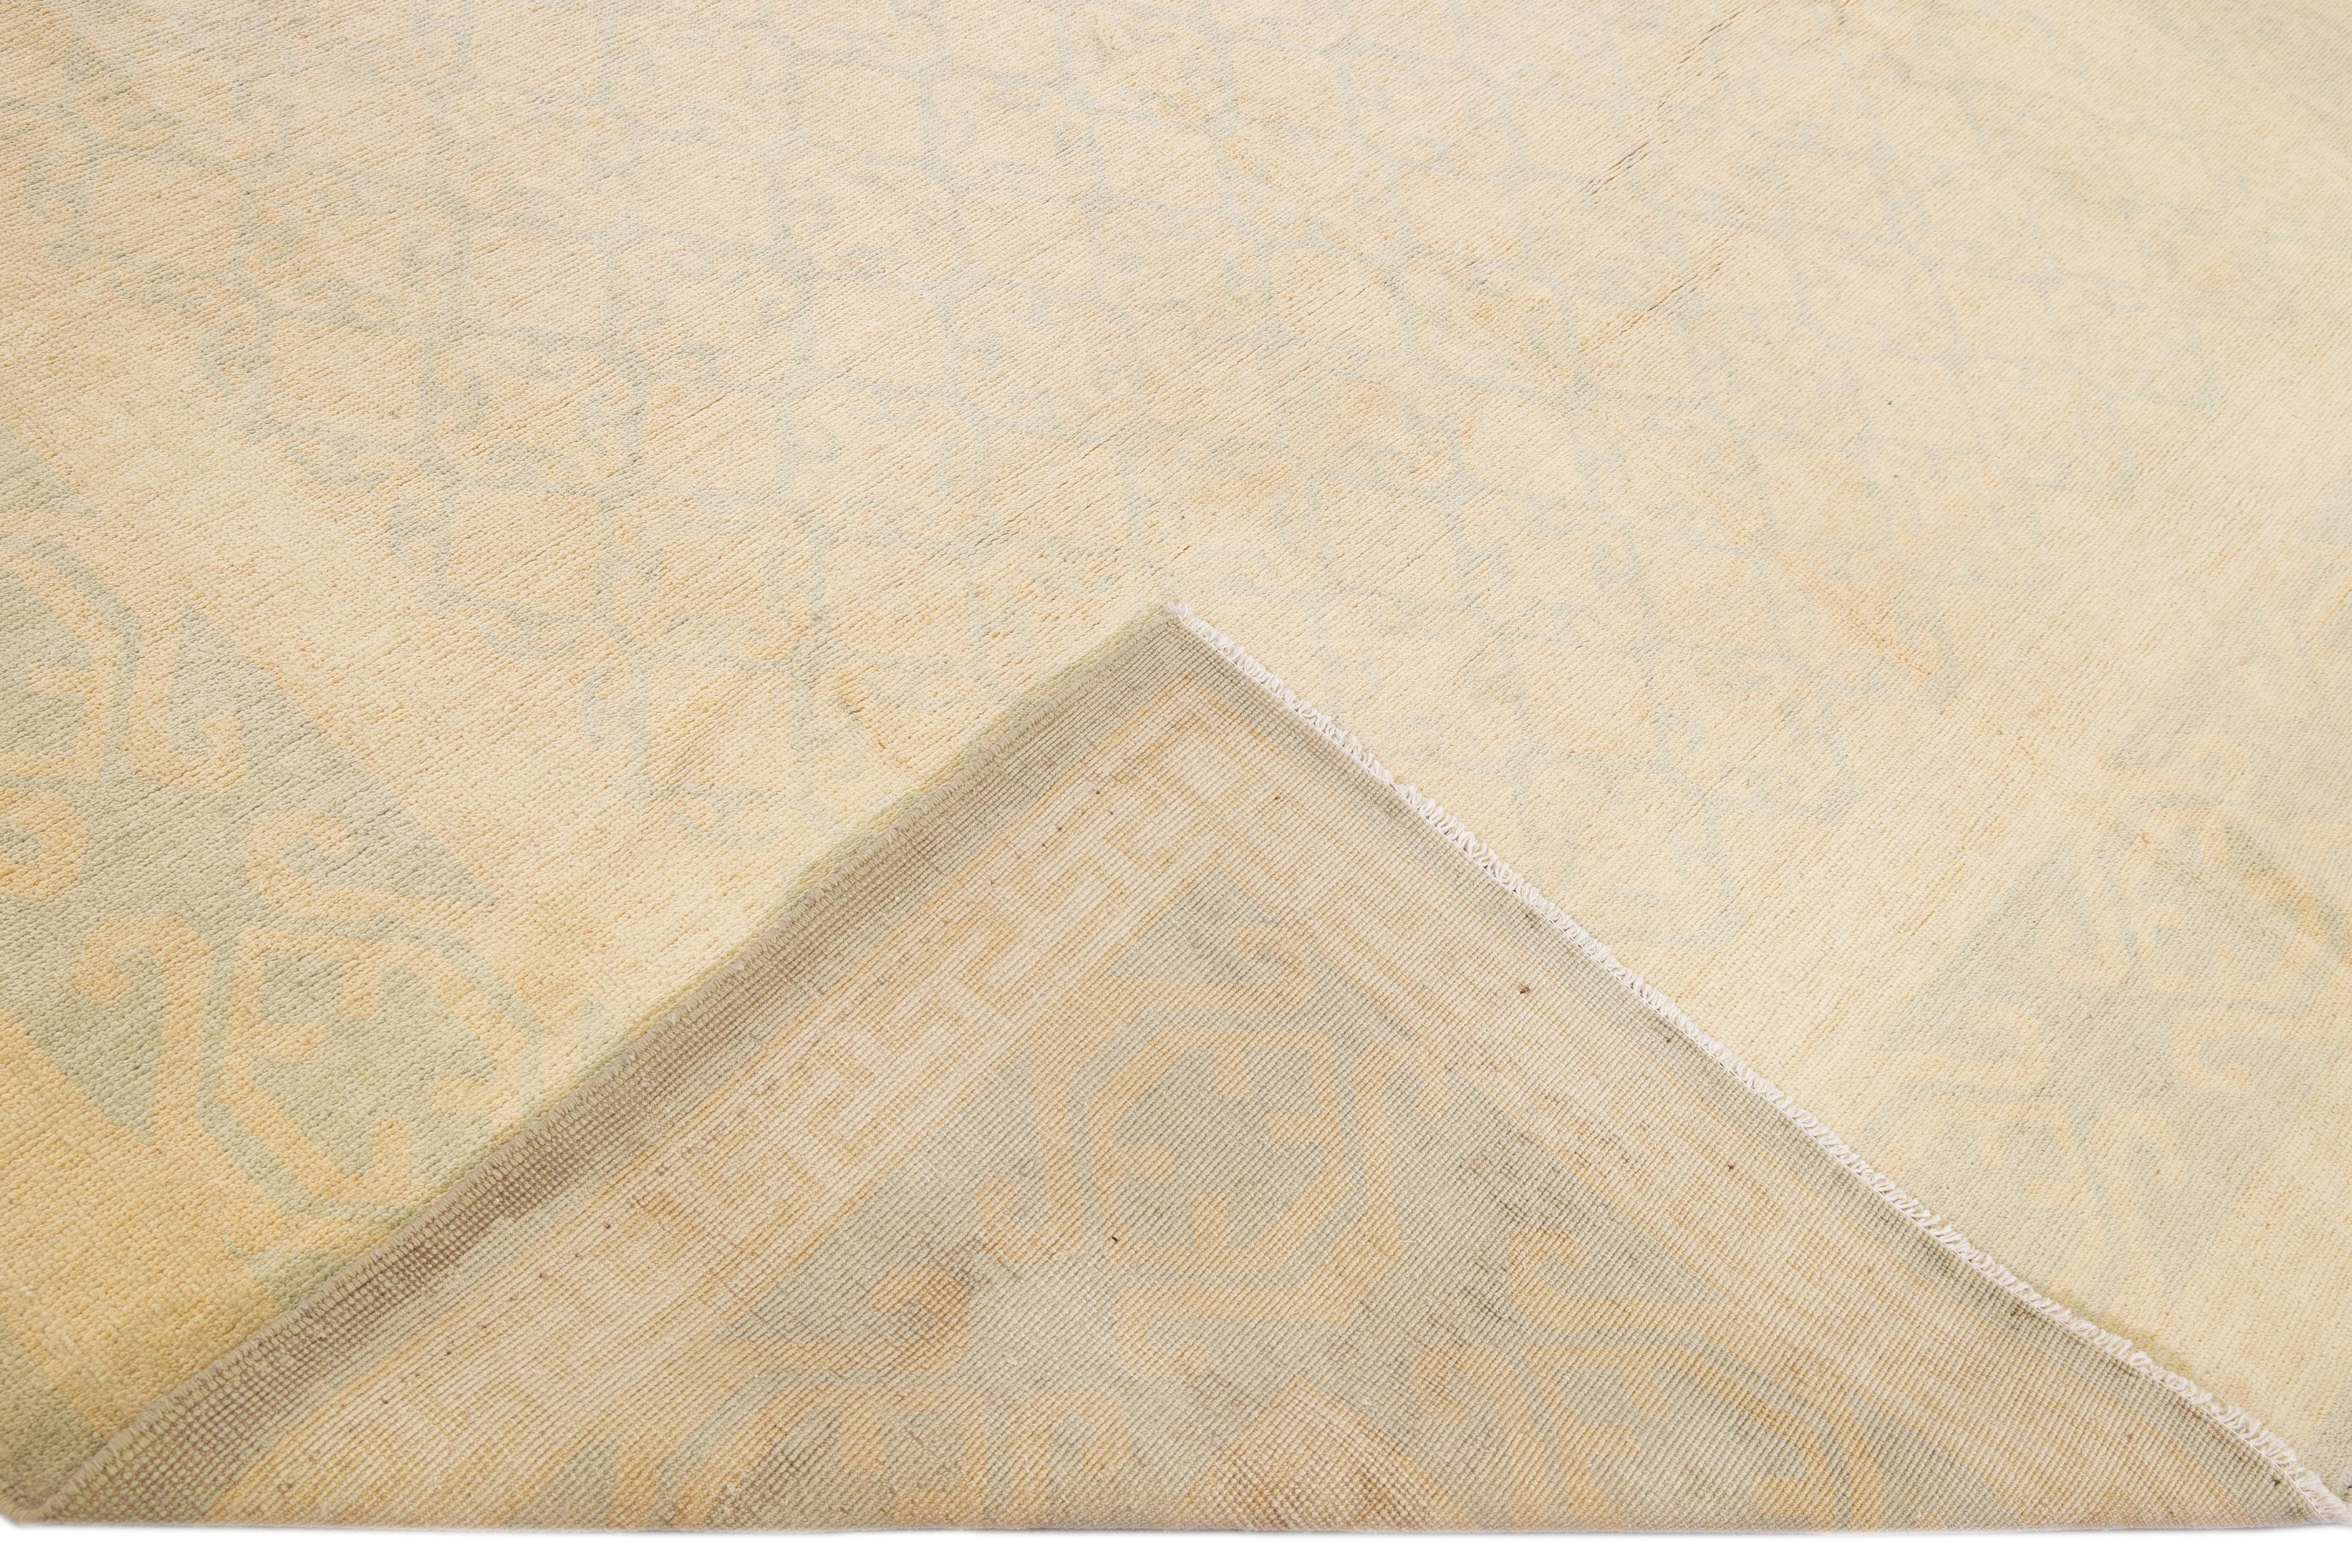 Schöne Moderne Khotan handgeknüpfte Wolle beige Feld. Dieser Khotan-Teppich hat einen wunderschön gestalteten Rahmen und blaue Akzente in einem herrlichen geometrischen Allover-Muster.

Dieser Teppich misst 8' 1